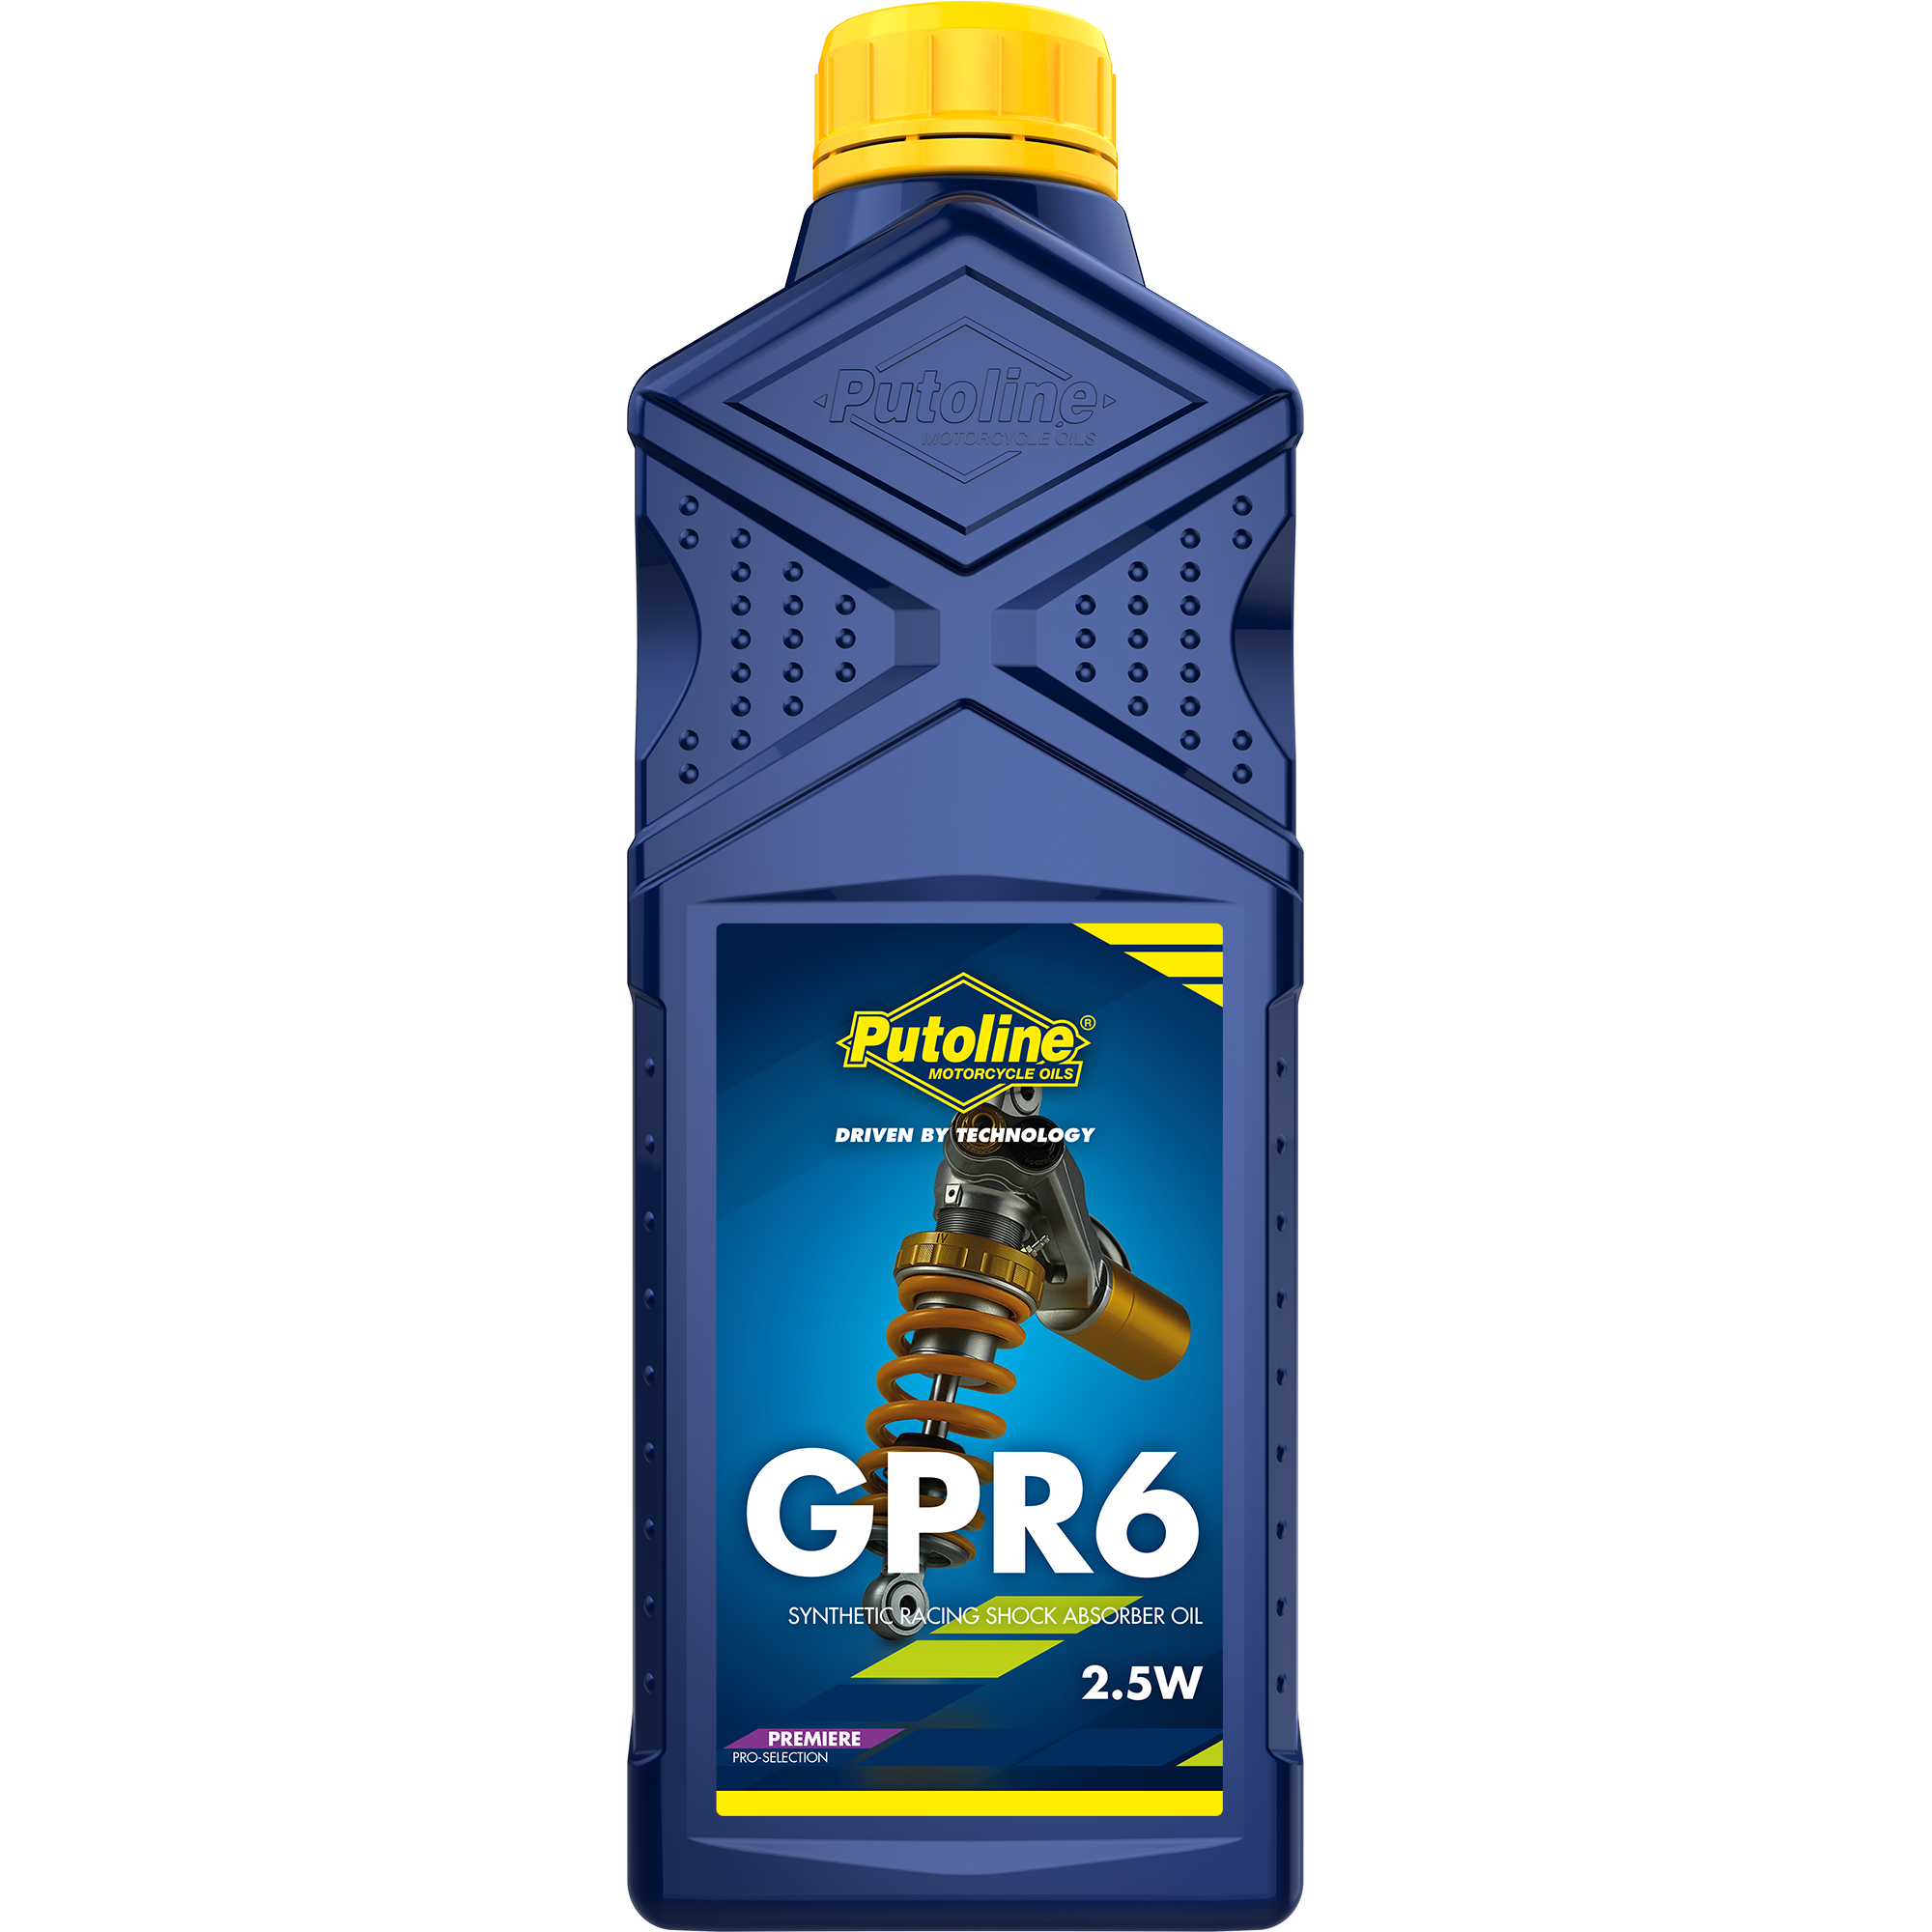 Putoline GPR 6 2.5W, 12 x 1 lt detail 2